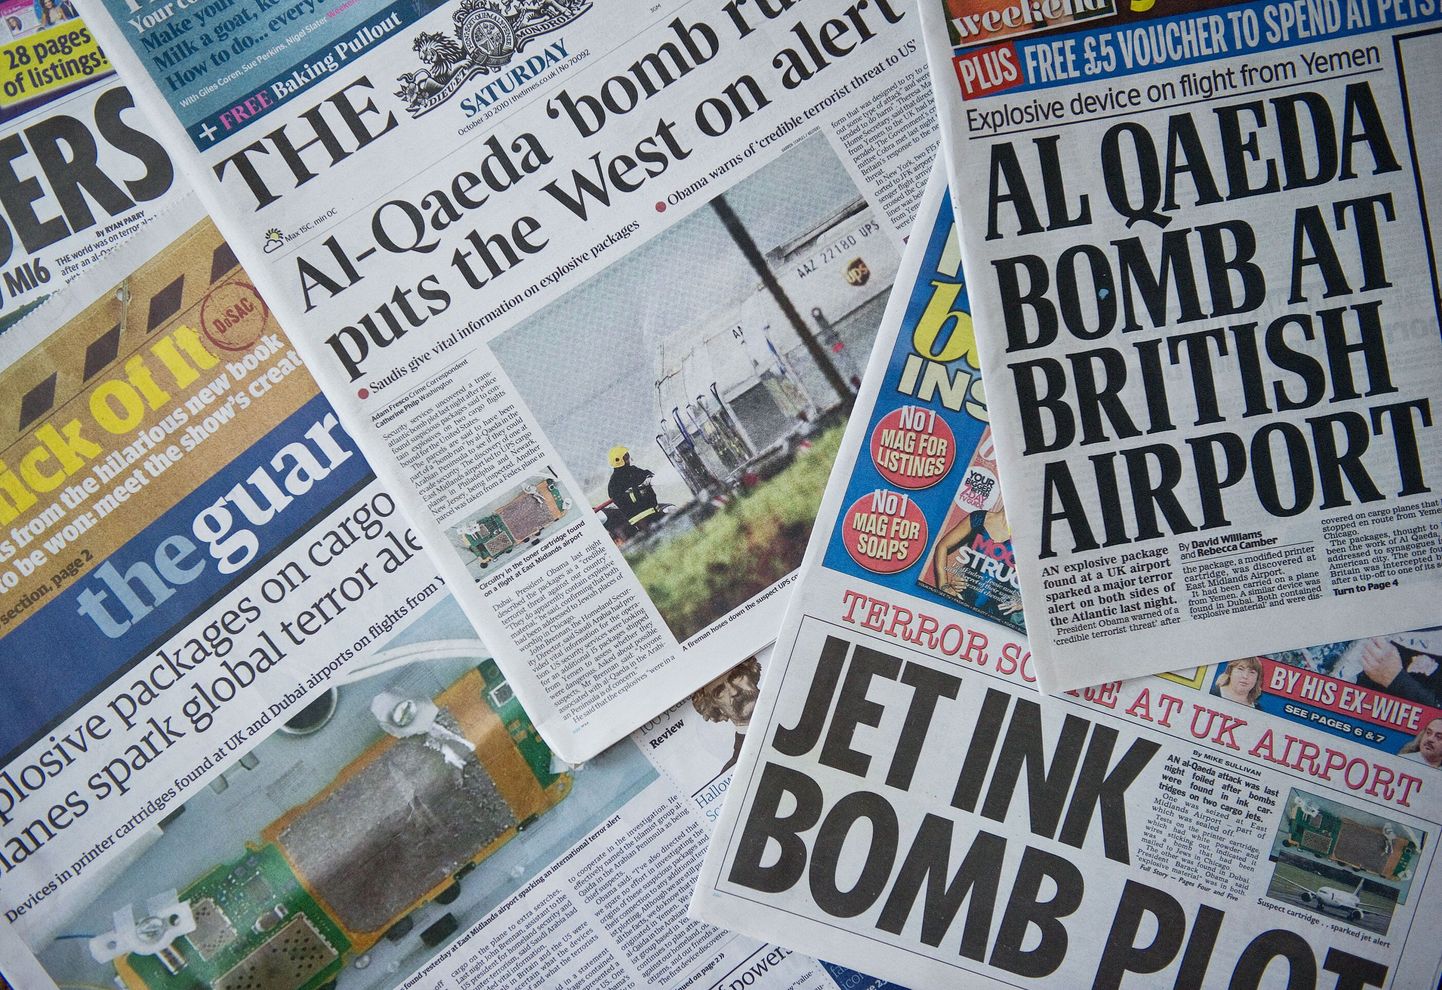 Briti ajalehtede esikaantel seostati lennukipommidega otsekohe al-Qaedat.